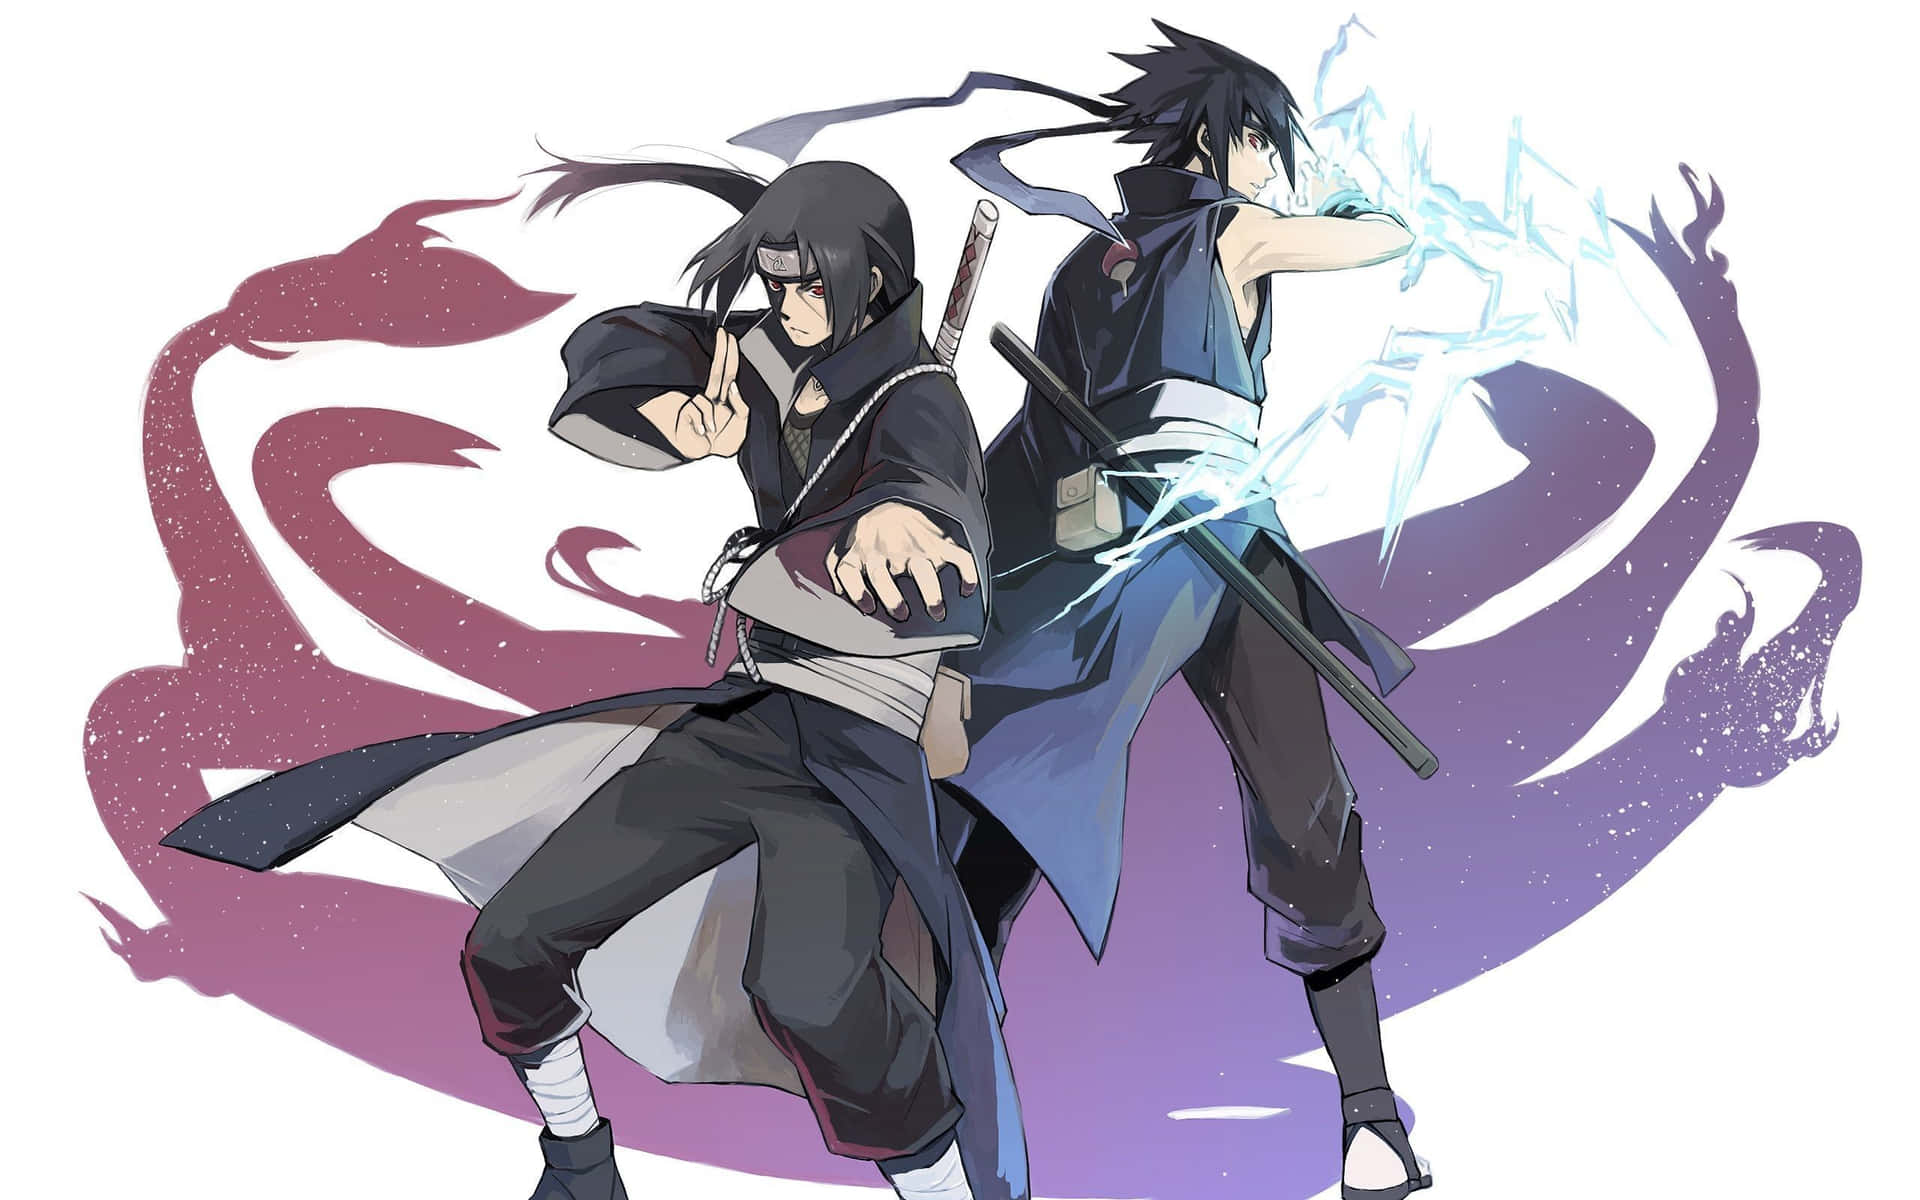 Wallpaper: Sasuke og Itachi Fighting Stance Wallpaper. Wallpaper